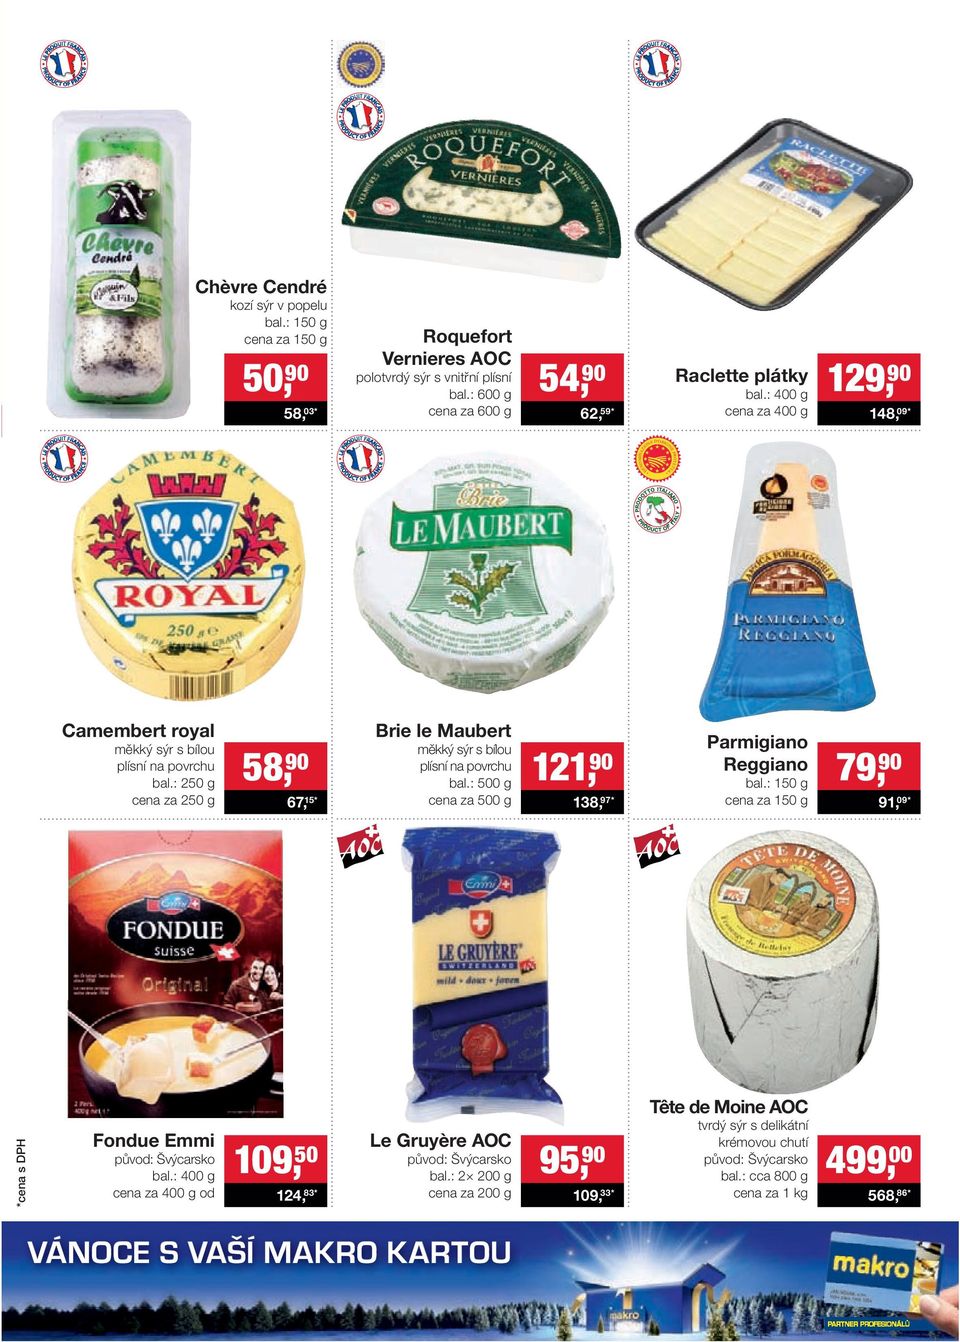 : 250 g cena za 250 g 58, 90 67, 15* Brie le Maubert měkký sýr s bílou plísní na povrchu bal.: 500 g cena za 500 g 121, 90 138, 97* Parmigiano Reggiano bal.